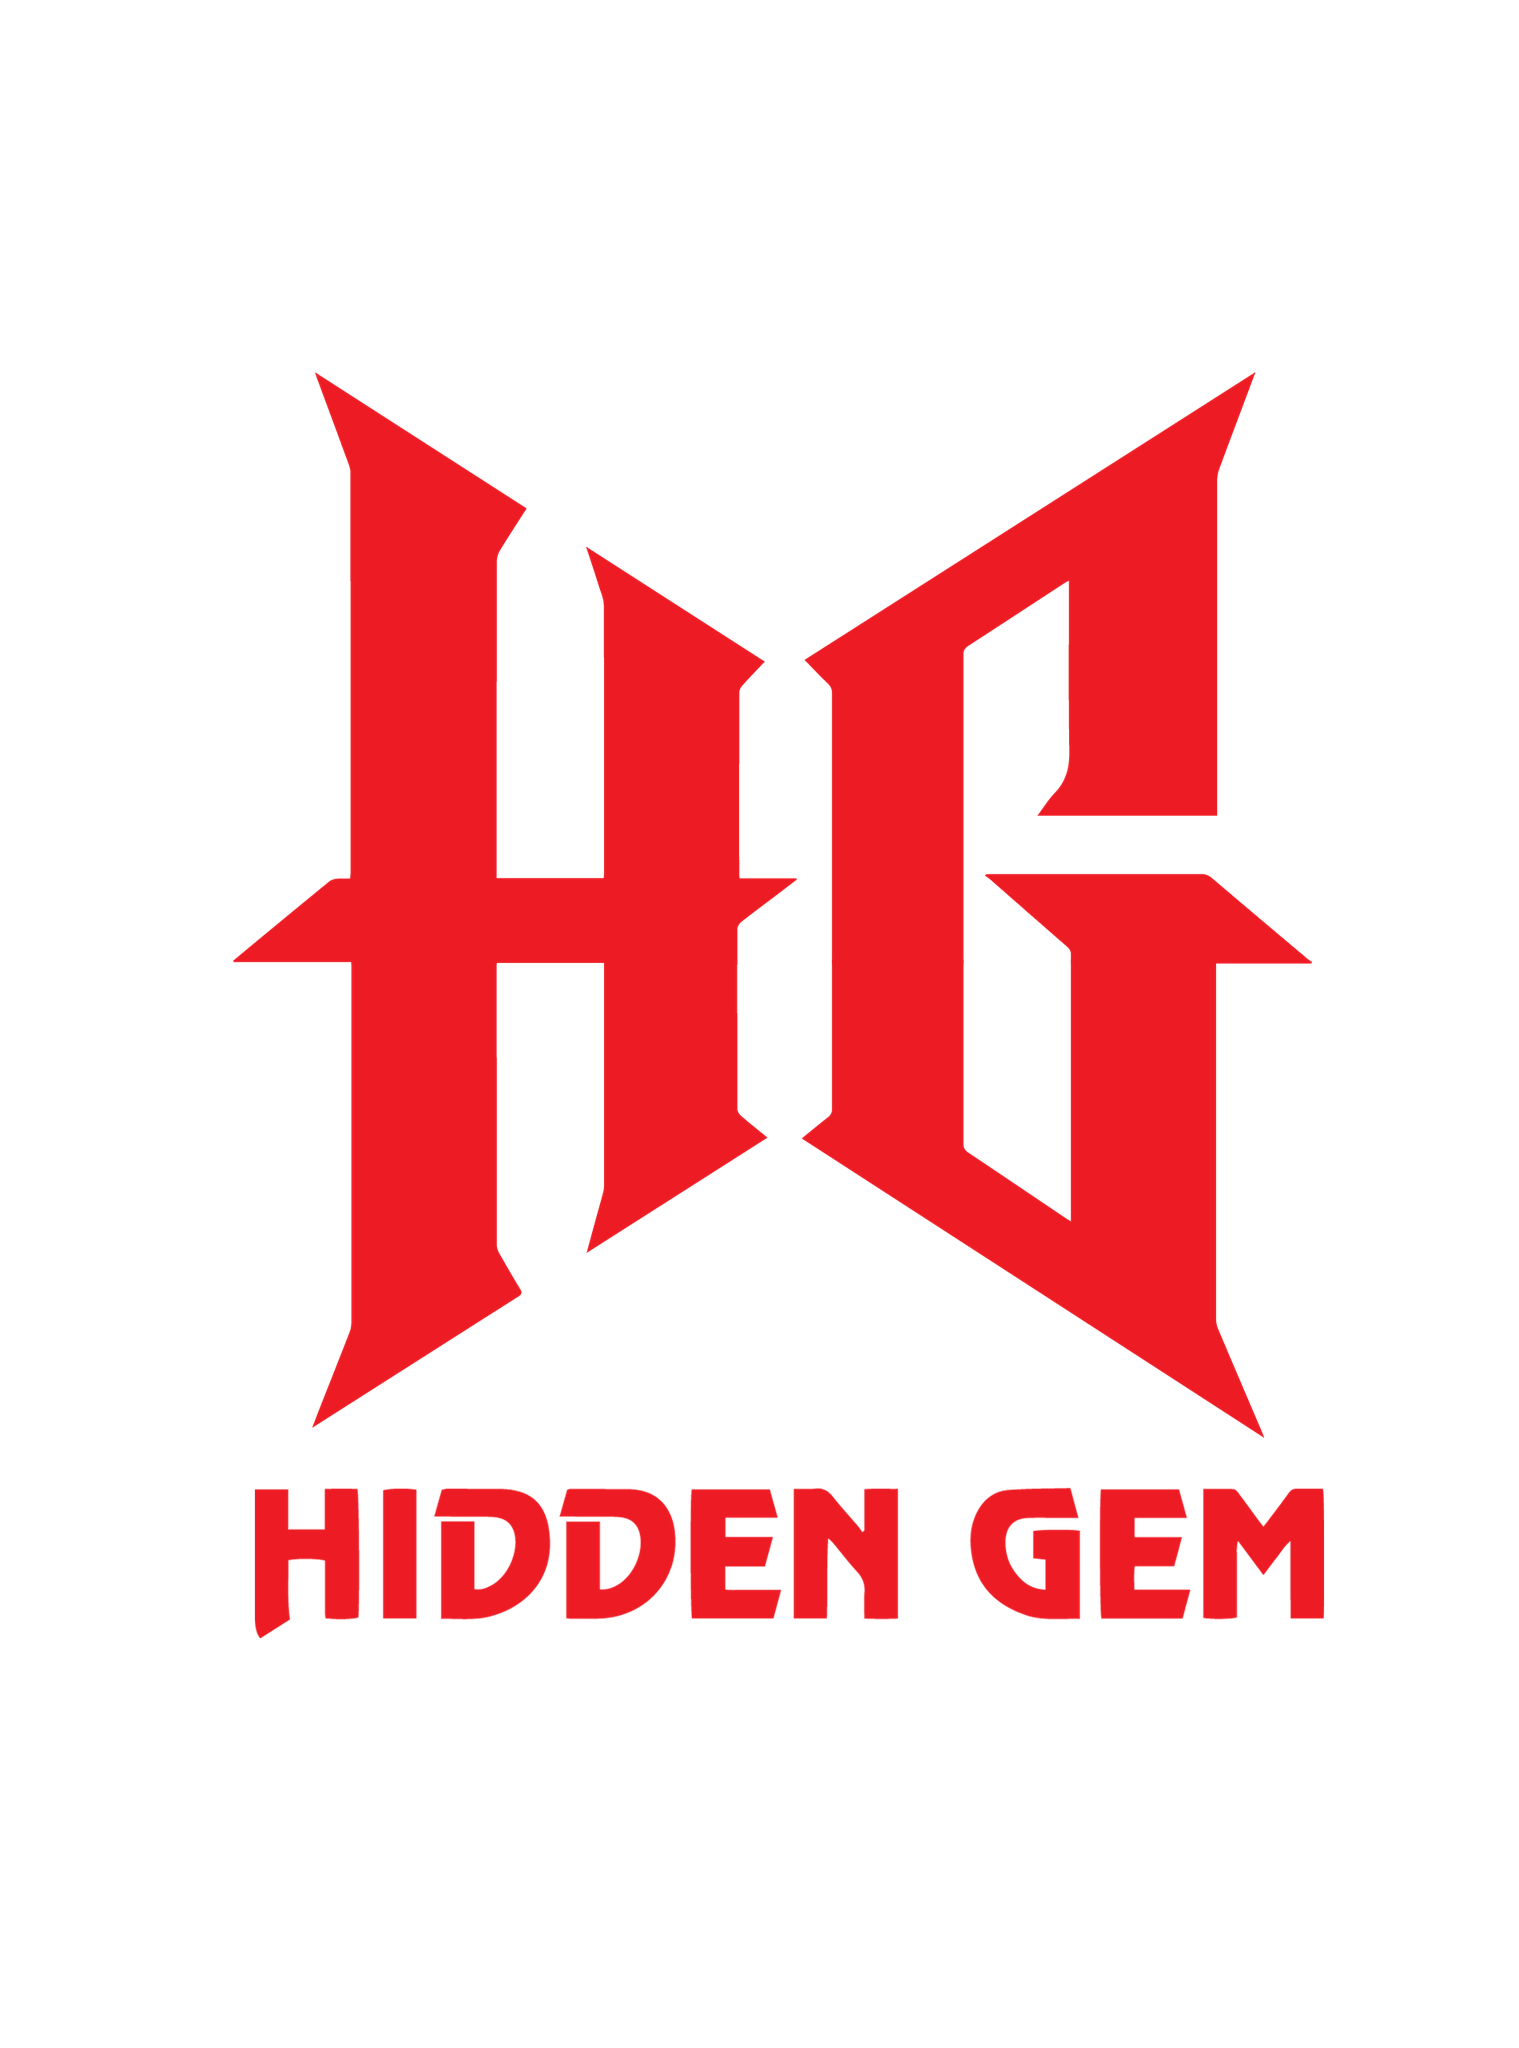 HiddenGEM